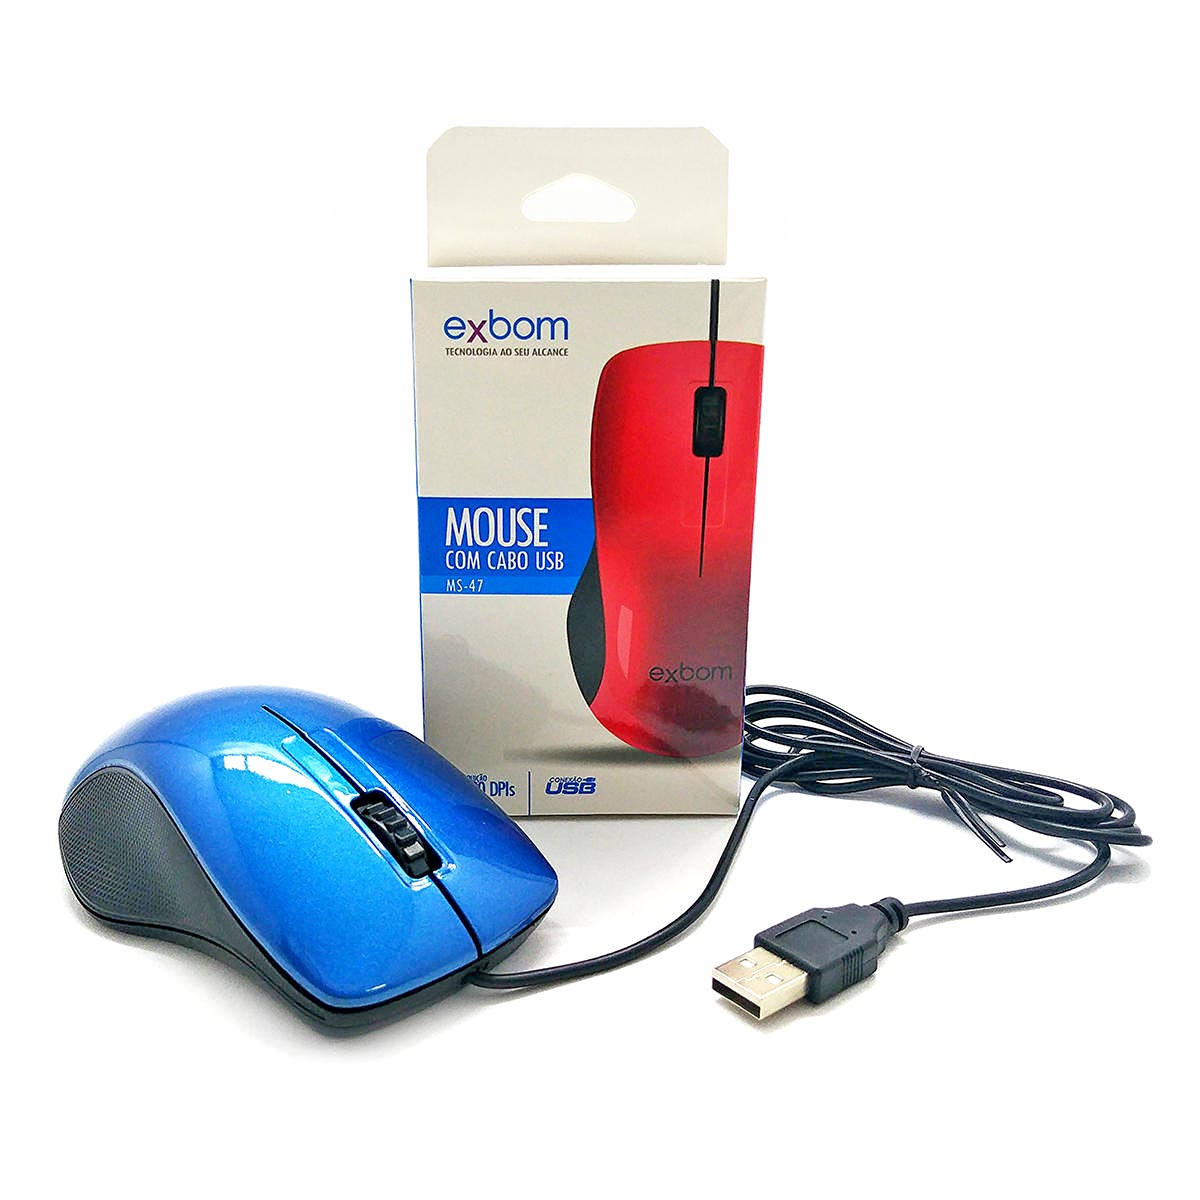 Mouse com cabo USB 1000DPIs Exbom MS-47 Azul com Acabamento Brilhante